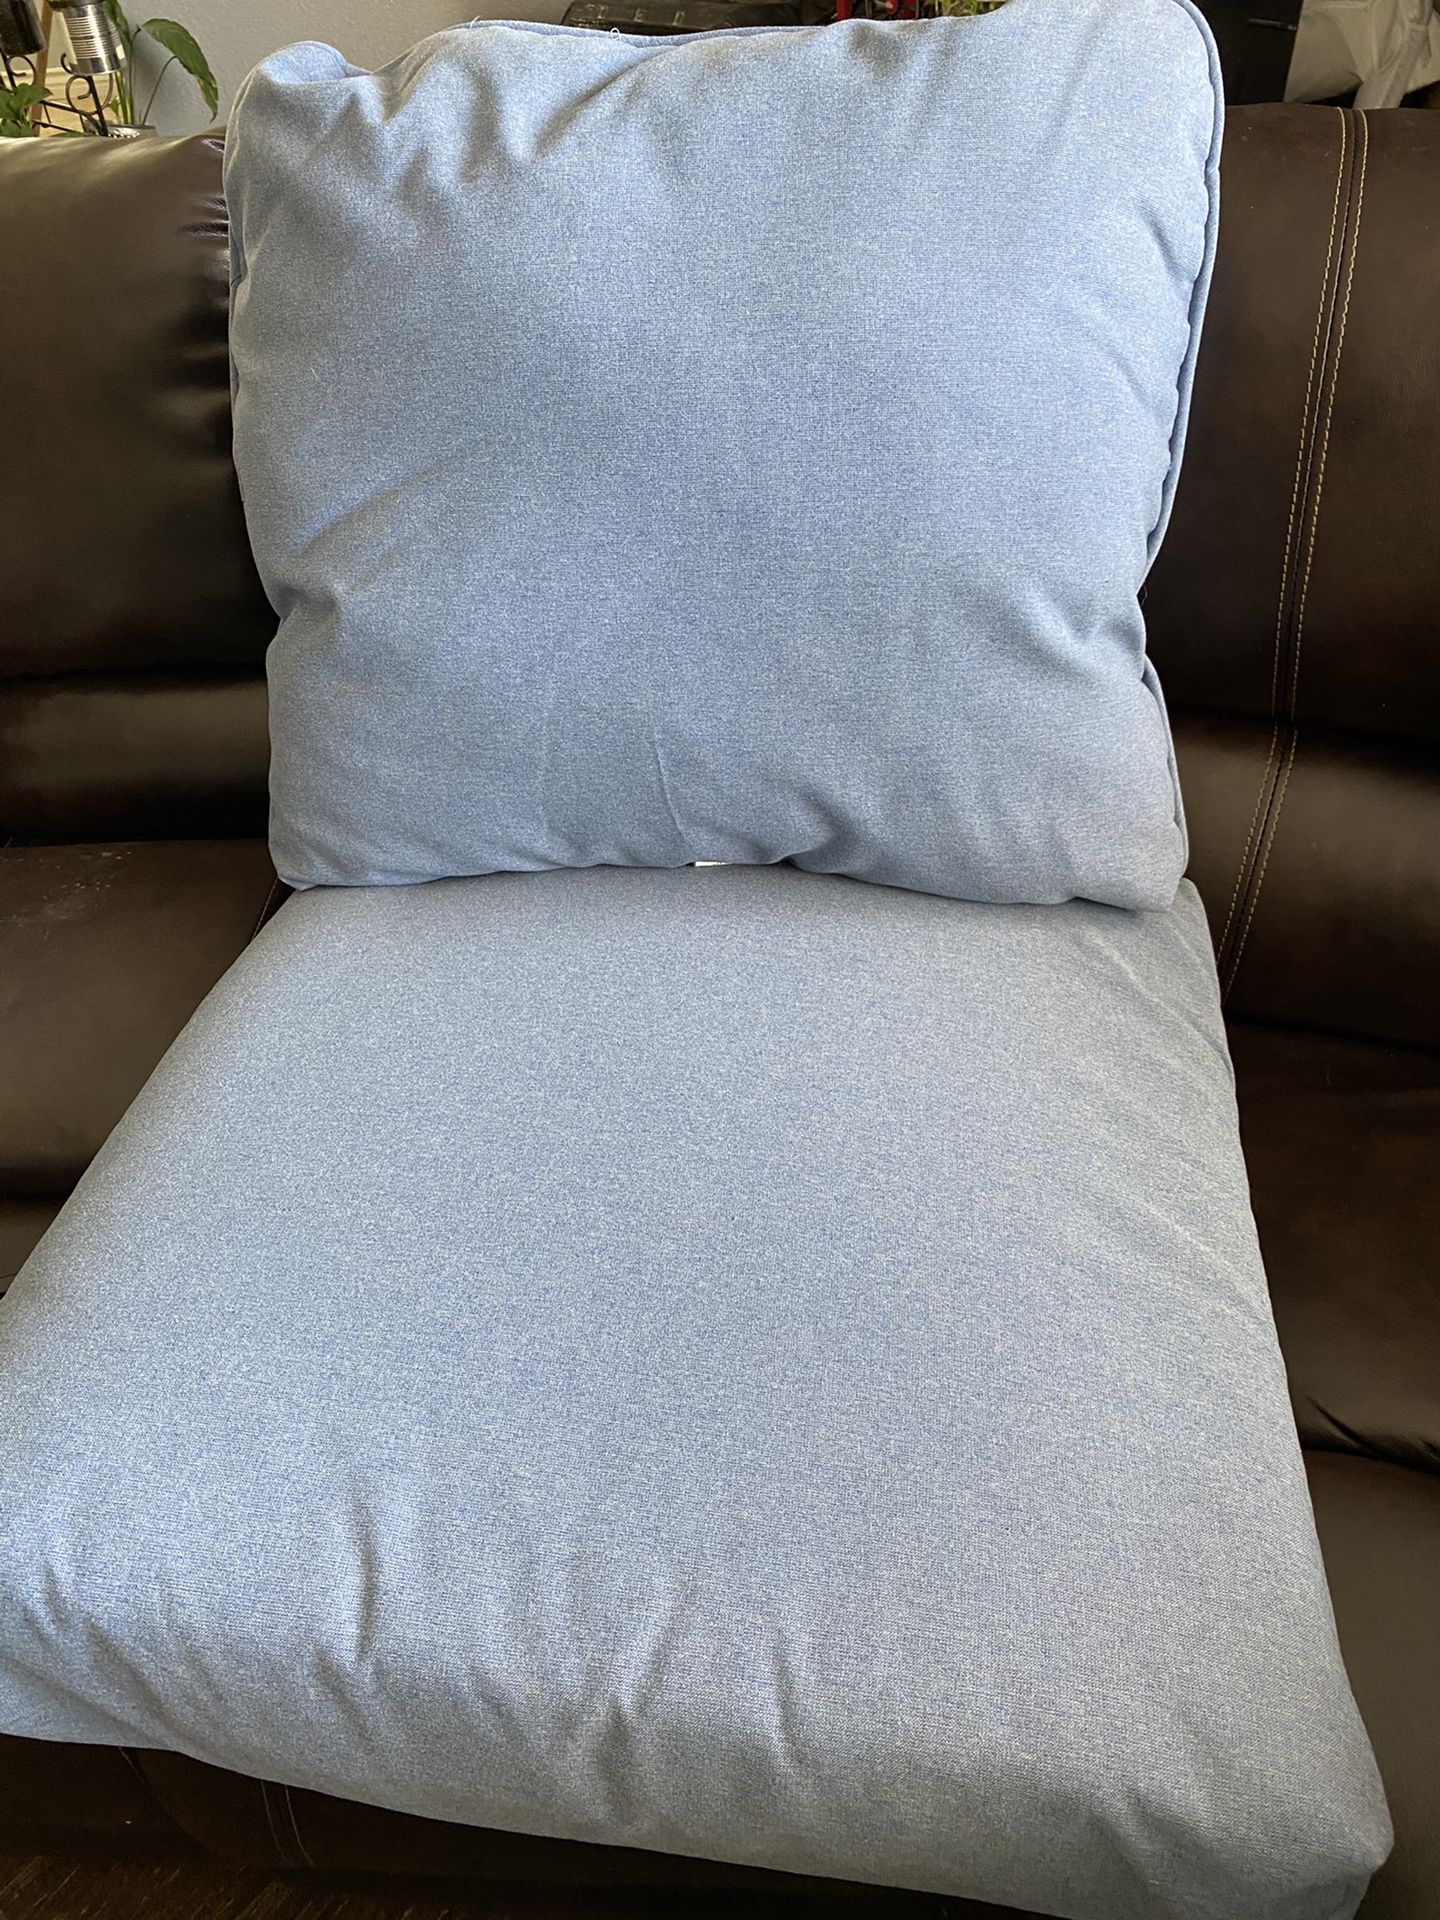 Blue chair cushions